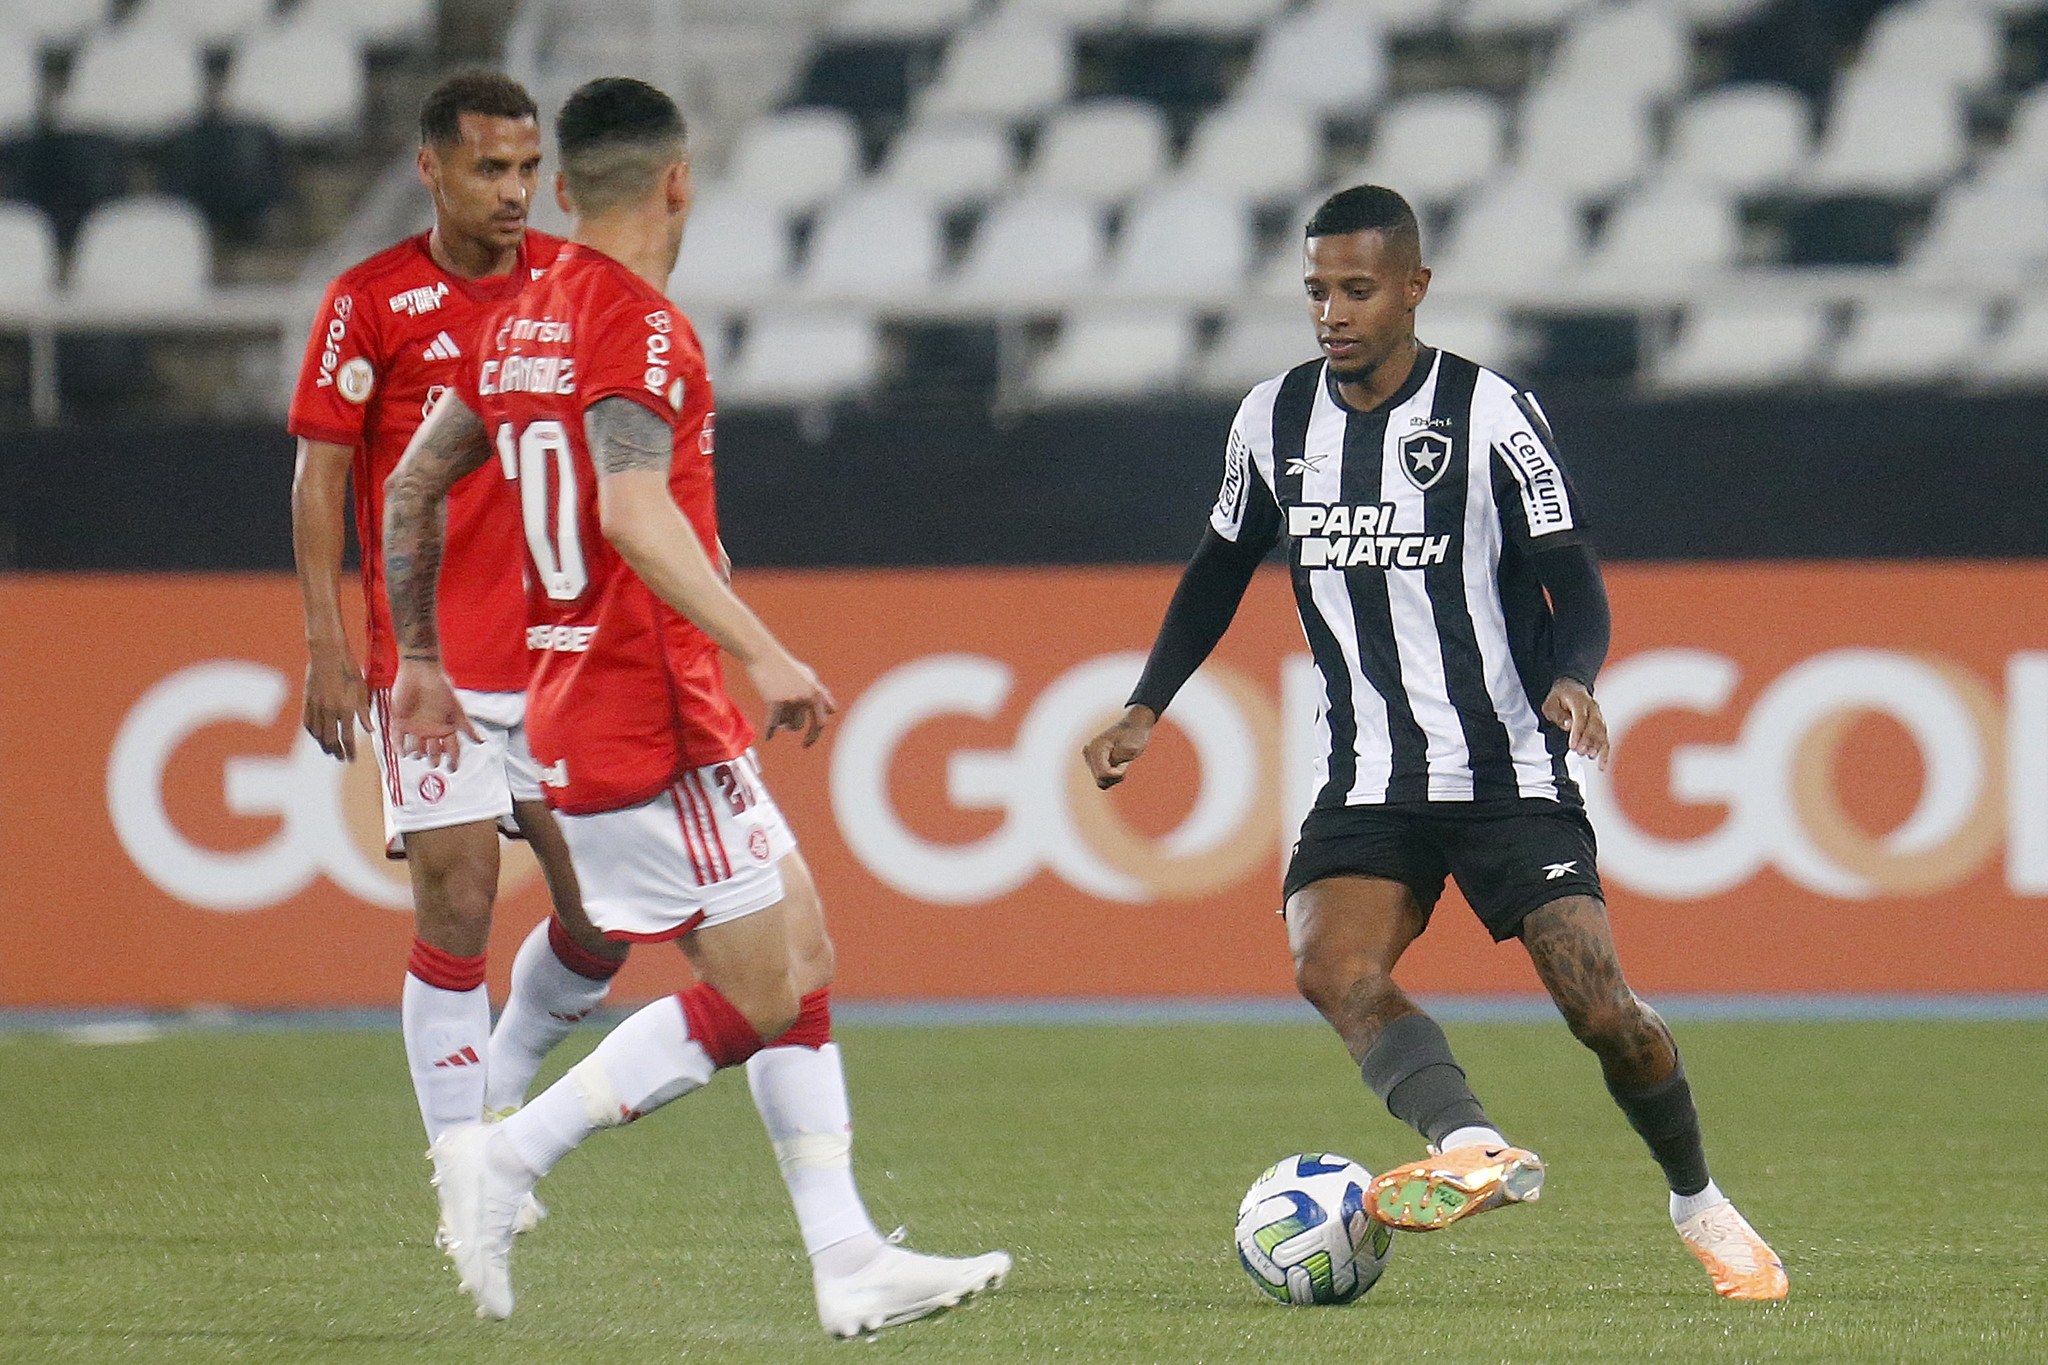 Tchê Tchê no último Botafogo x Internacional no Nilton Santos. ( Foto: Vitor Silva/Botafogo)